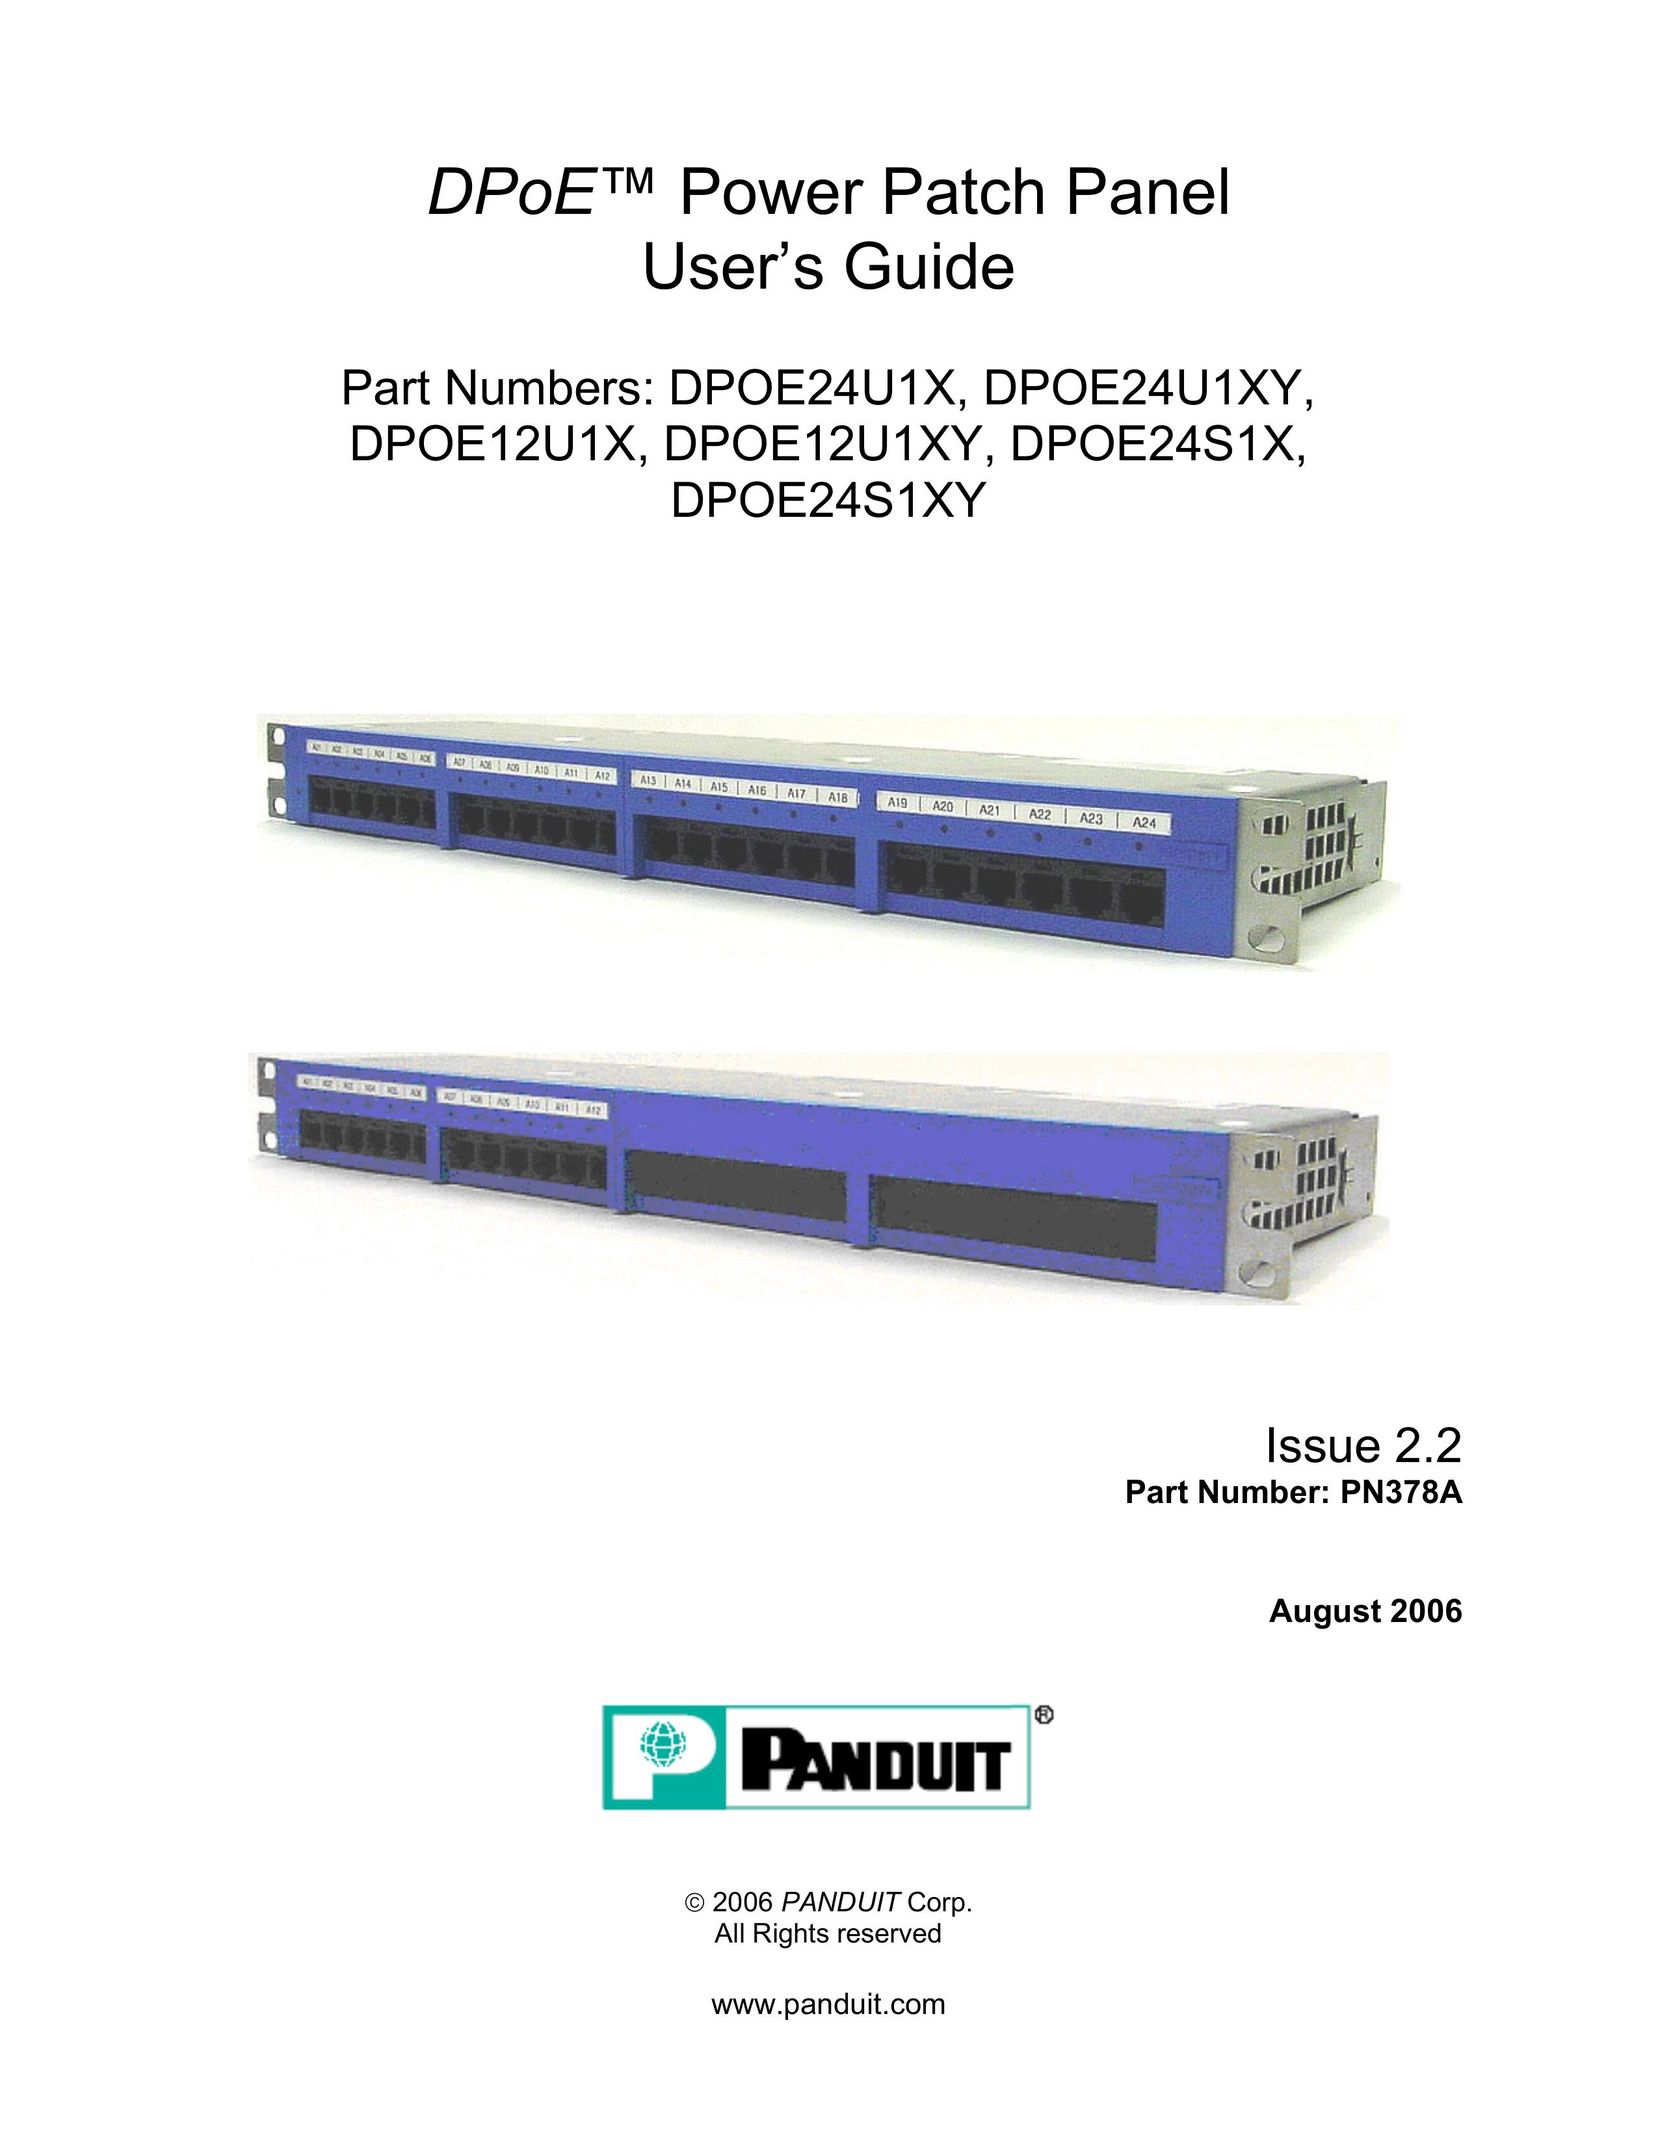 Panduit DPOE12U1XY Network Card User Manual